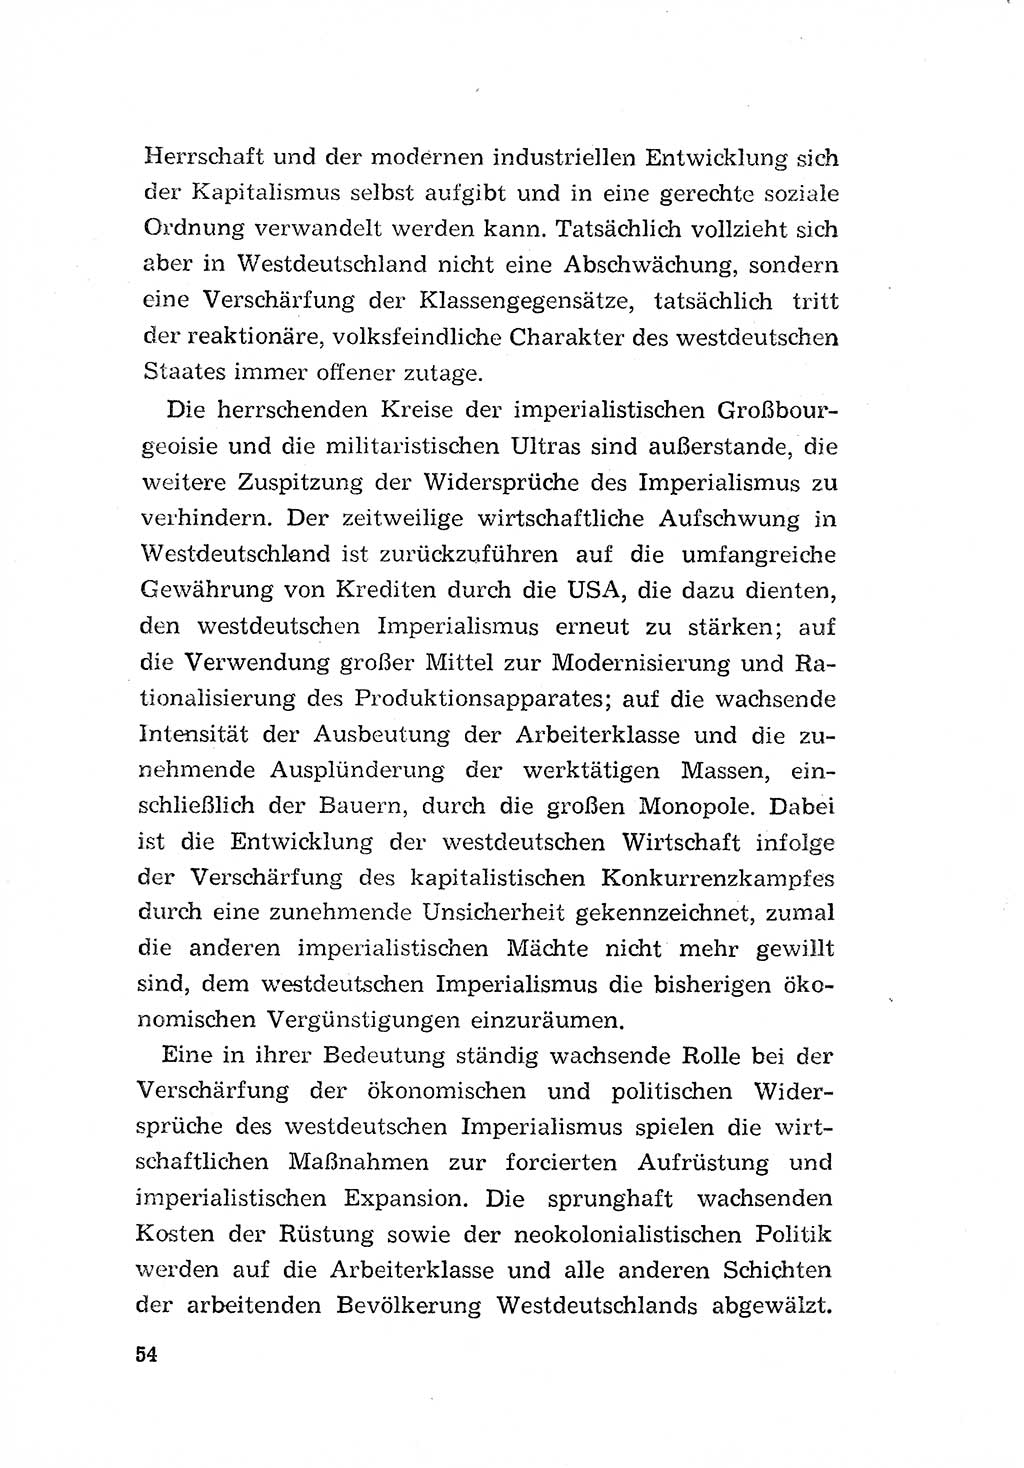 Programm der Sozialistischen Einheitspartei Deutschlands (SED) [Deutsche Demokratische Republik (DDR)] 1963, Seite 54 (Progr. SED DDR 1963, S. 54)